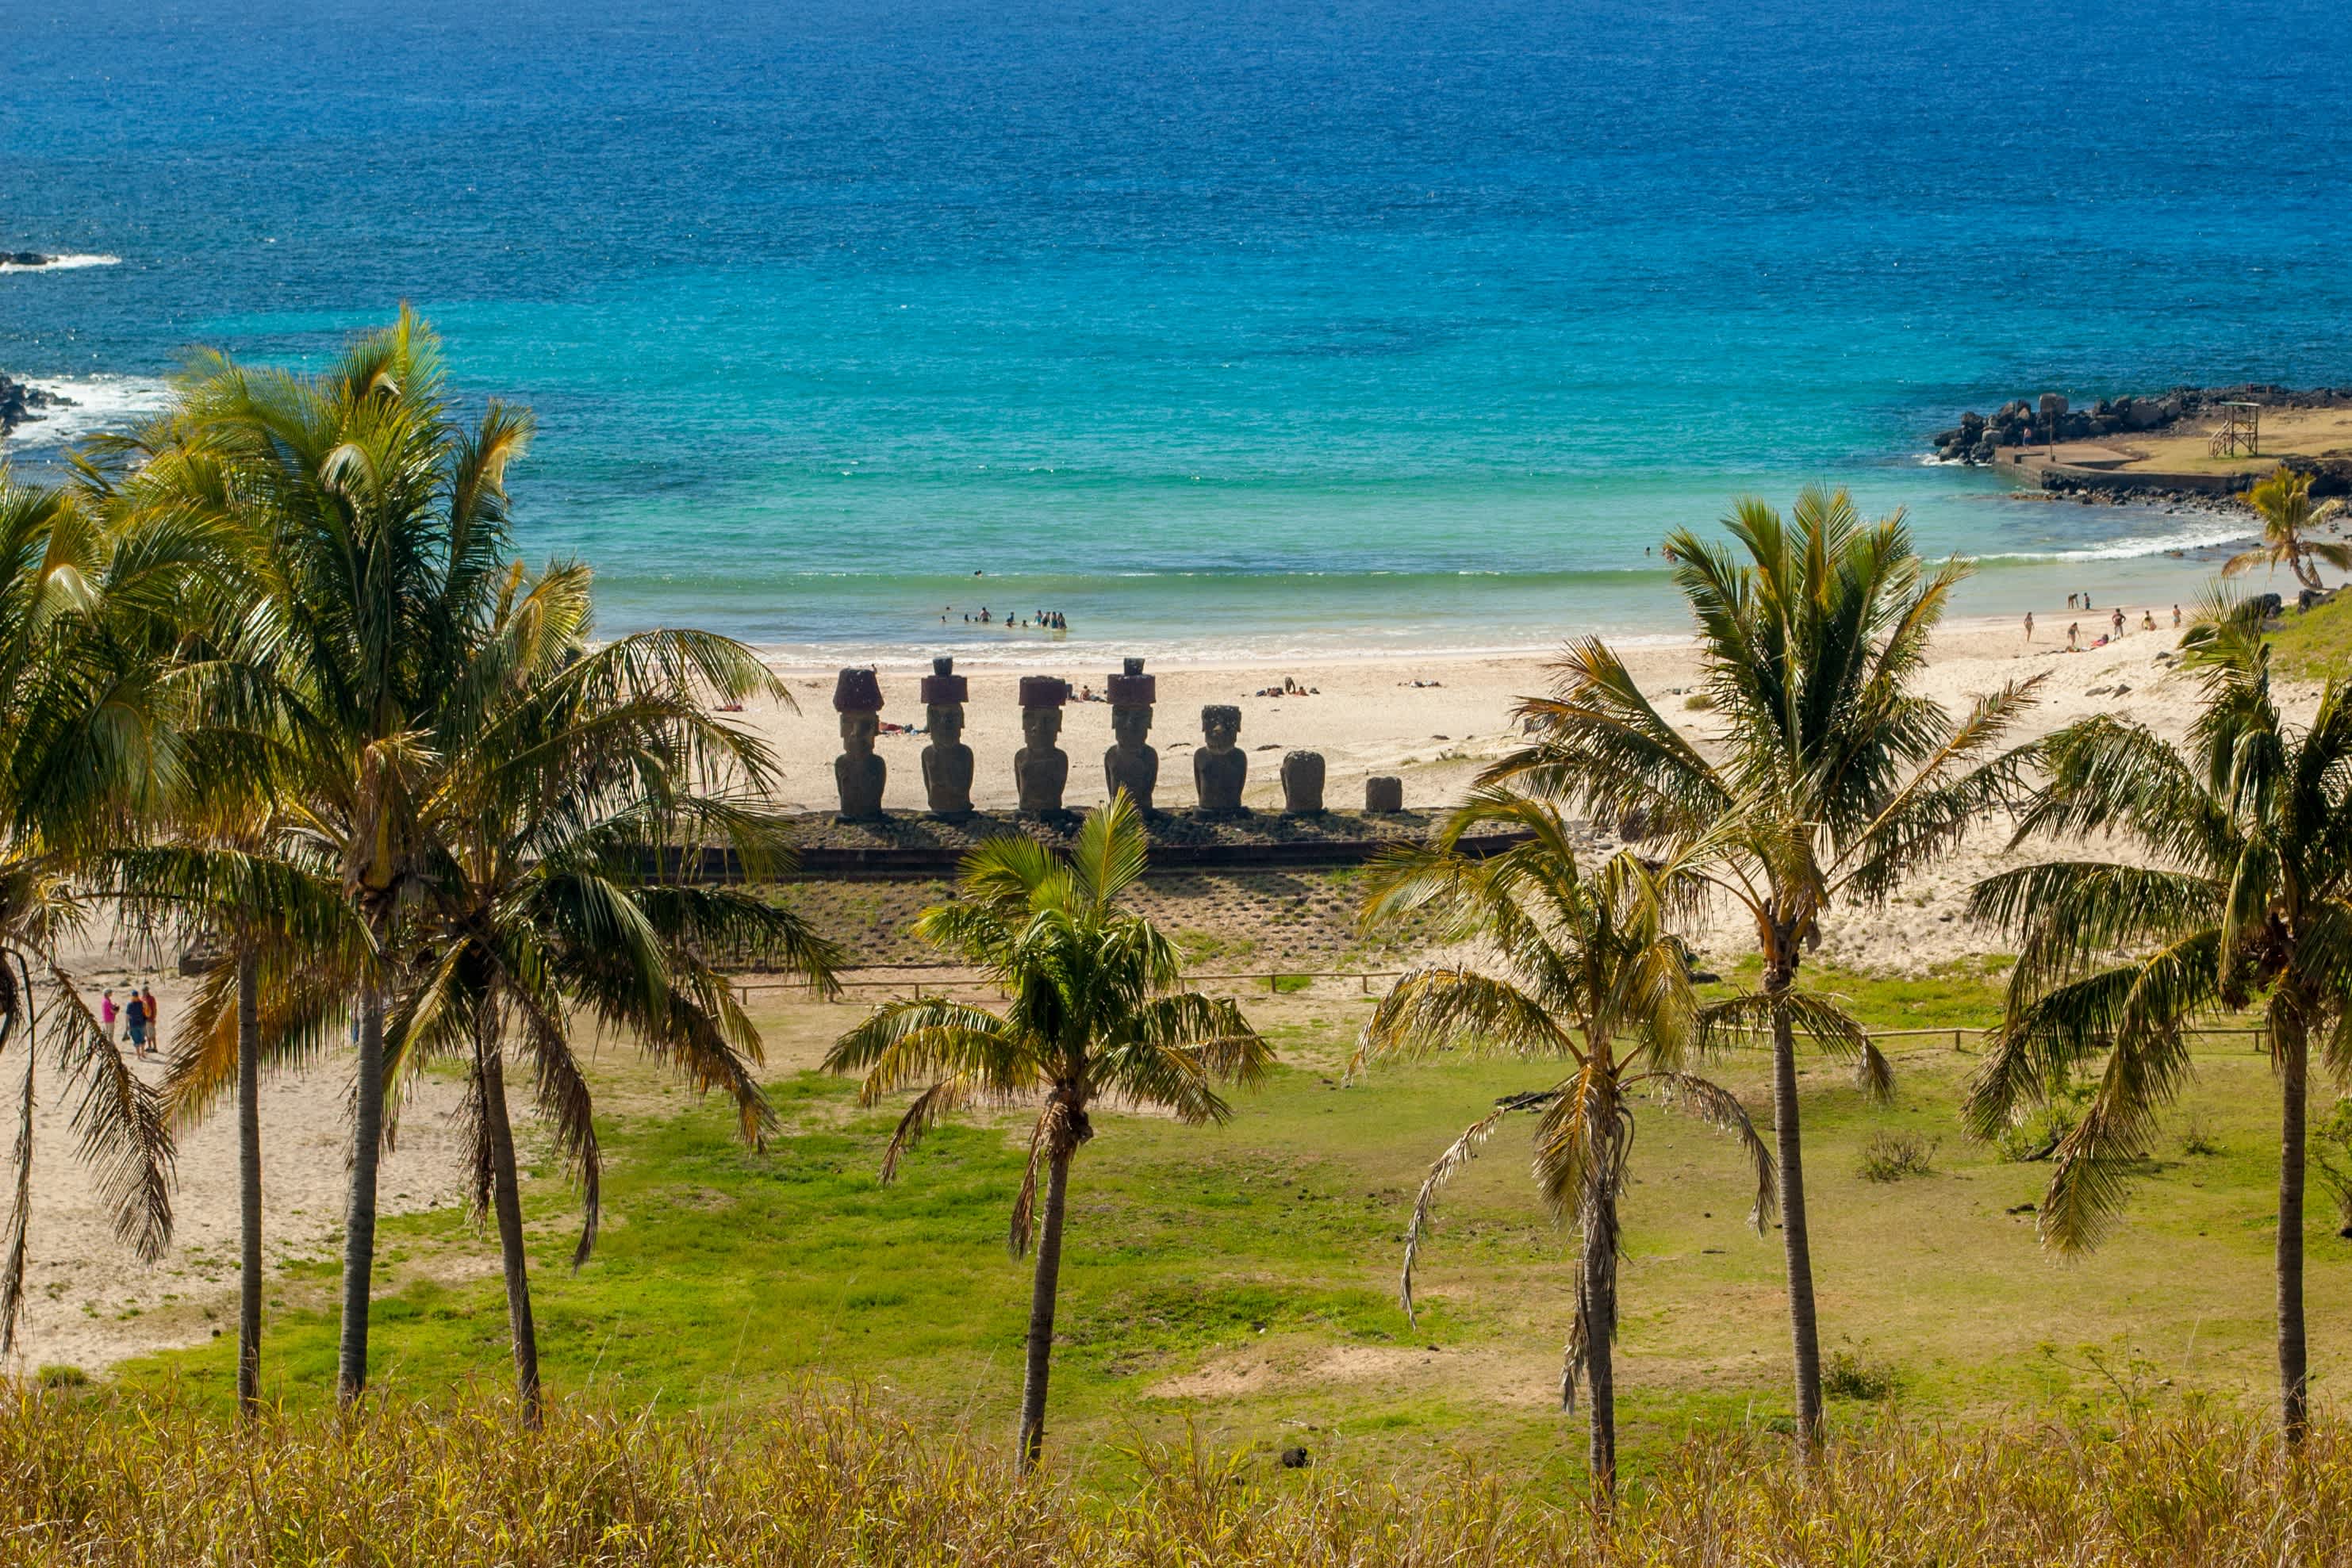 Vue d'une plage avec des statues maoï sur l'île de Pâques.